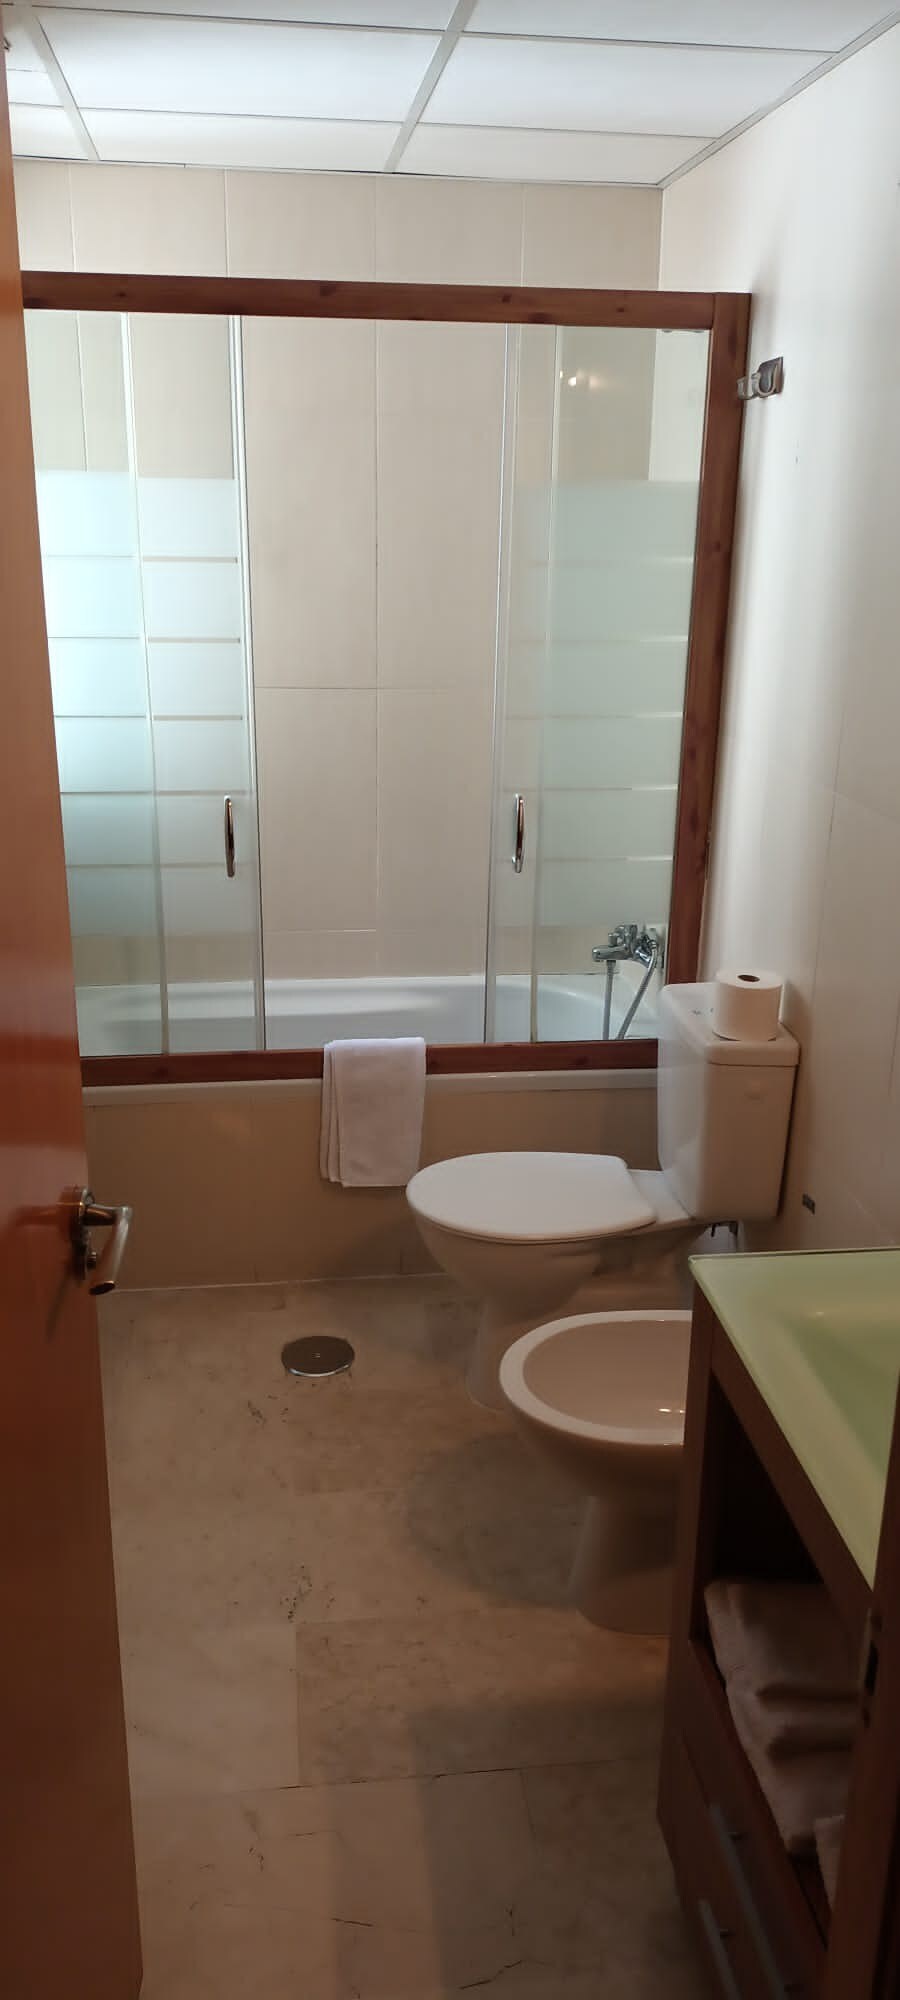 Habitación doble independiente baño compartido